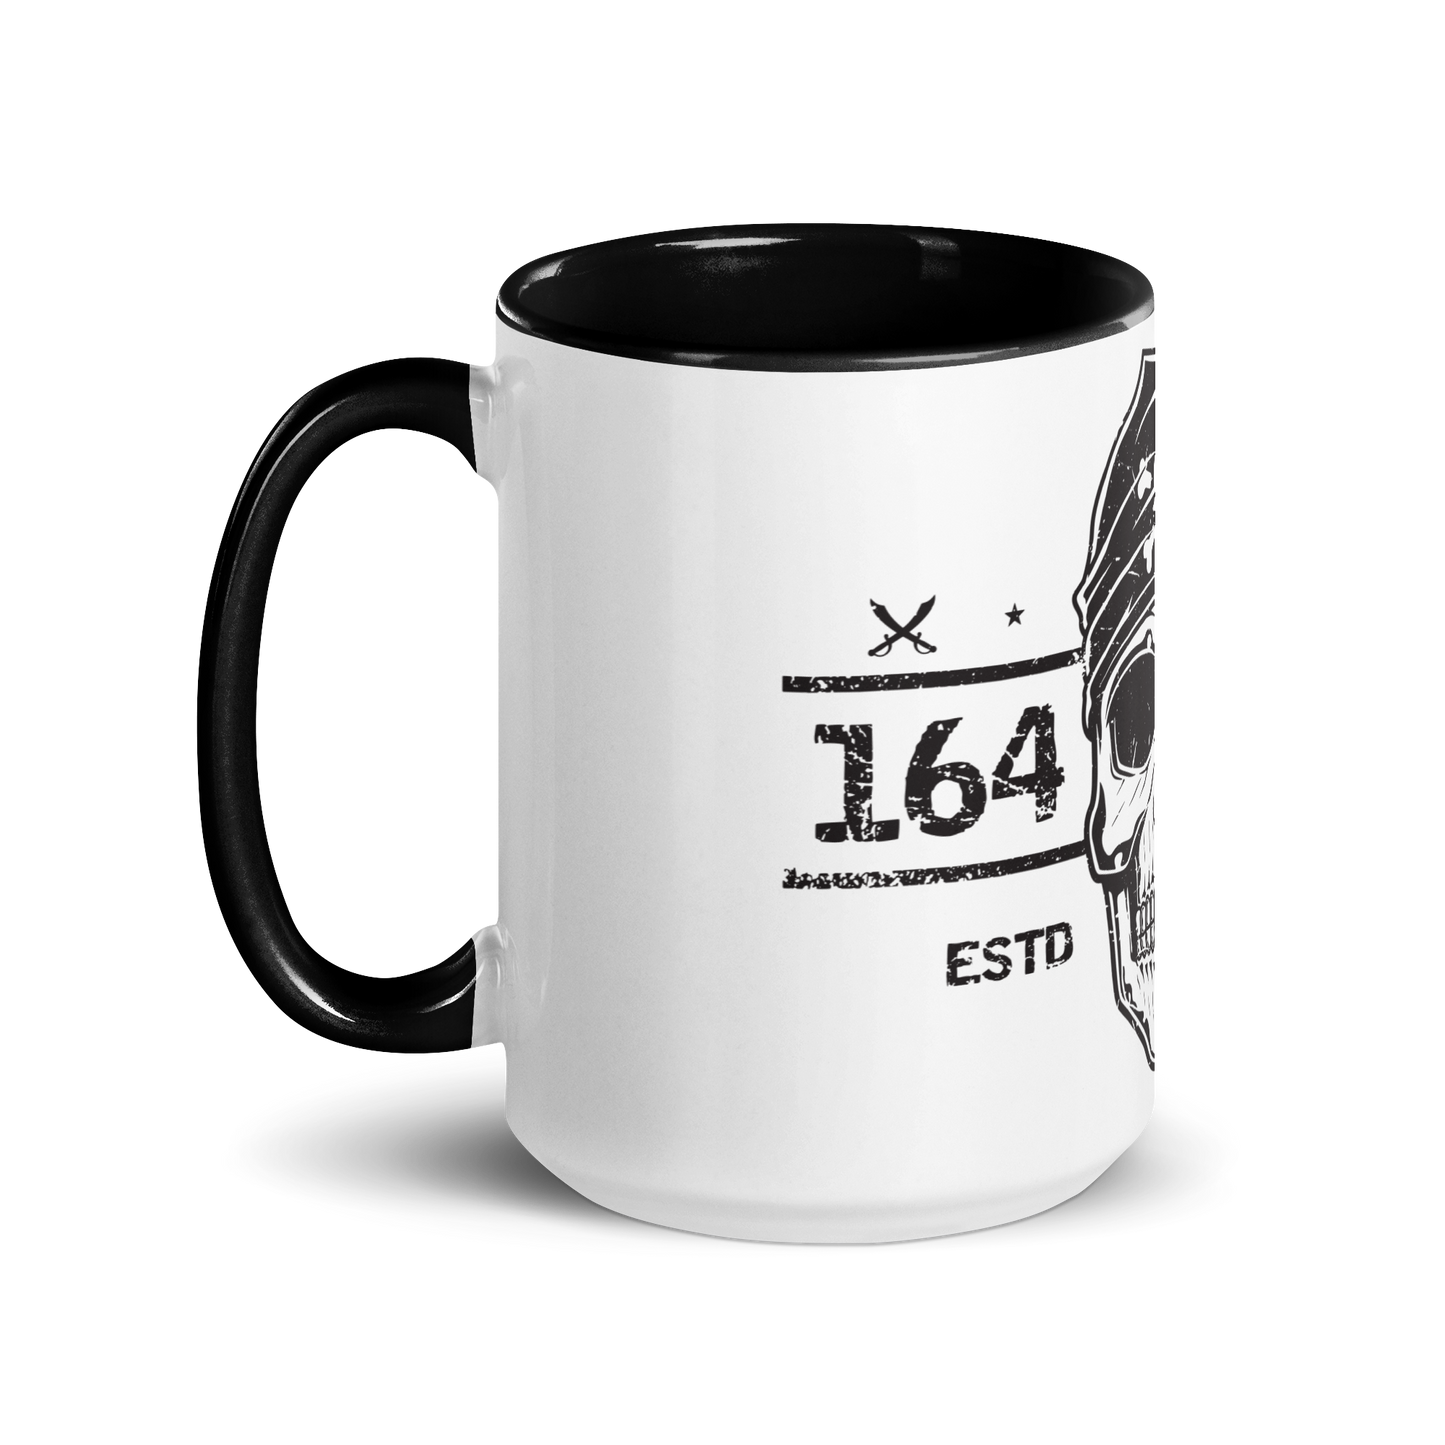 164 Mug